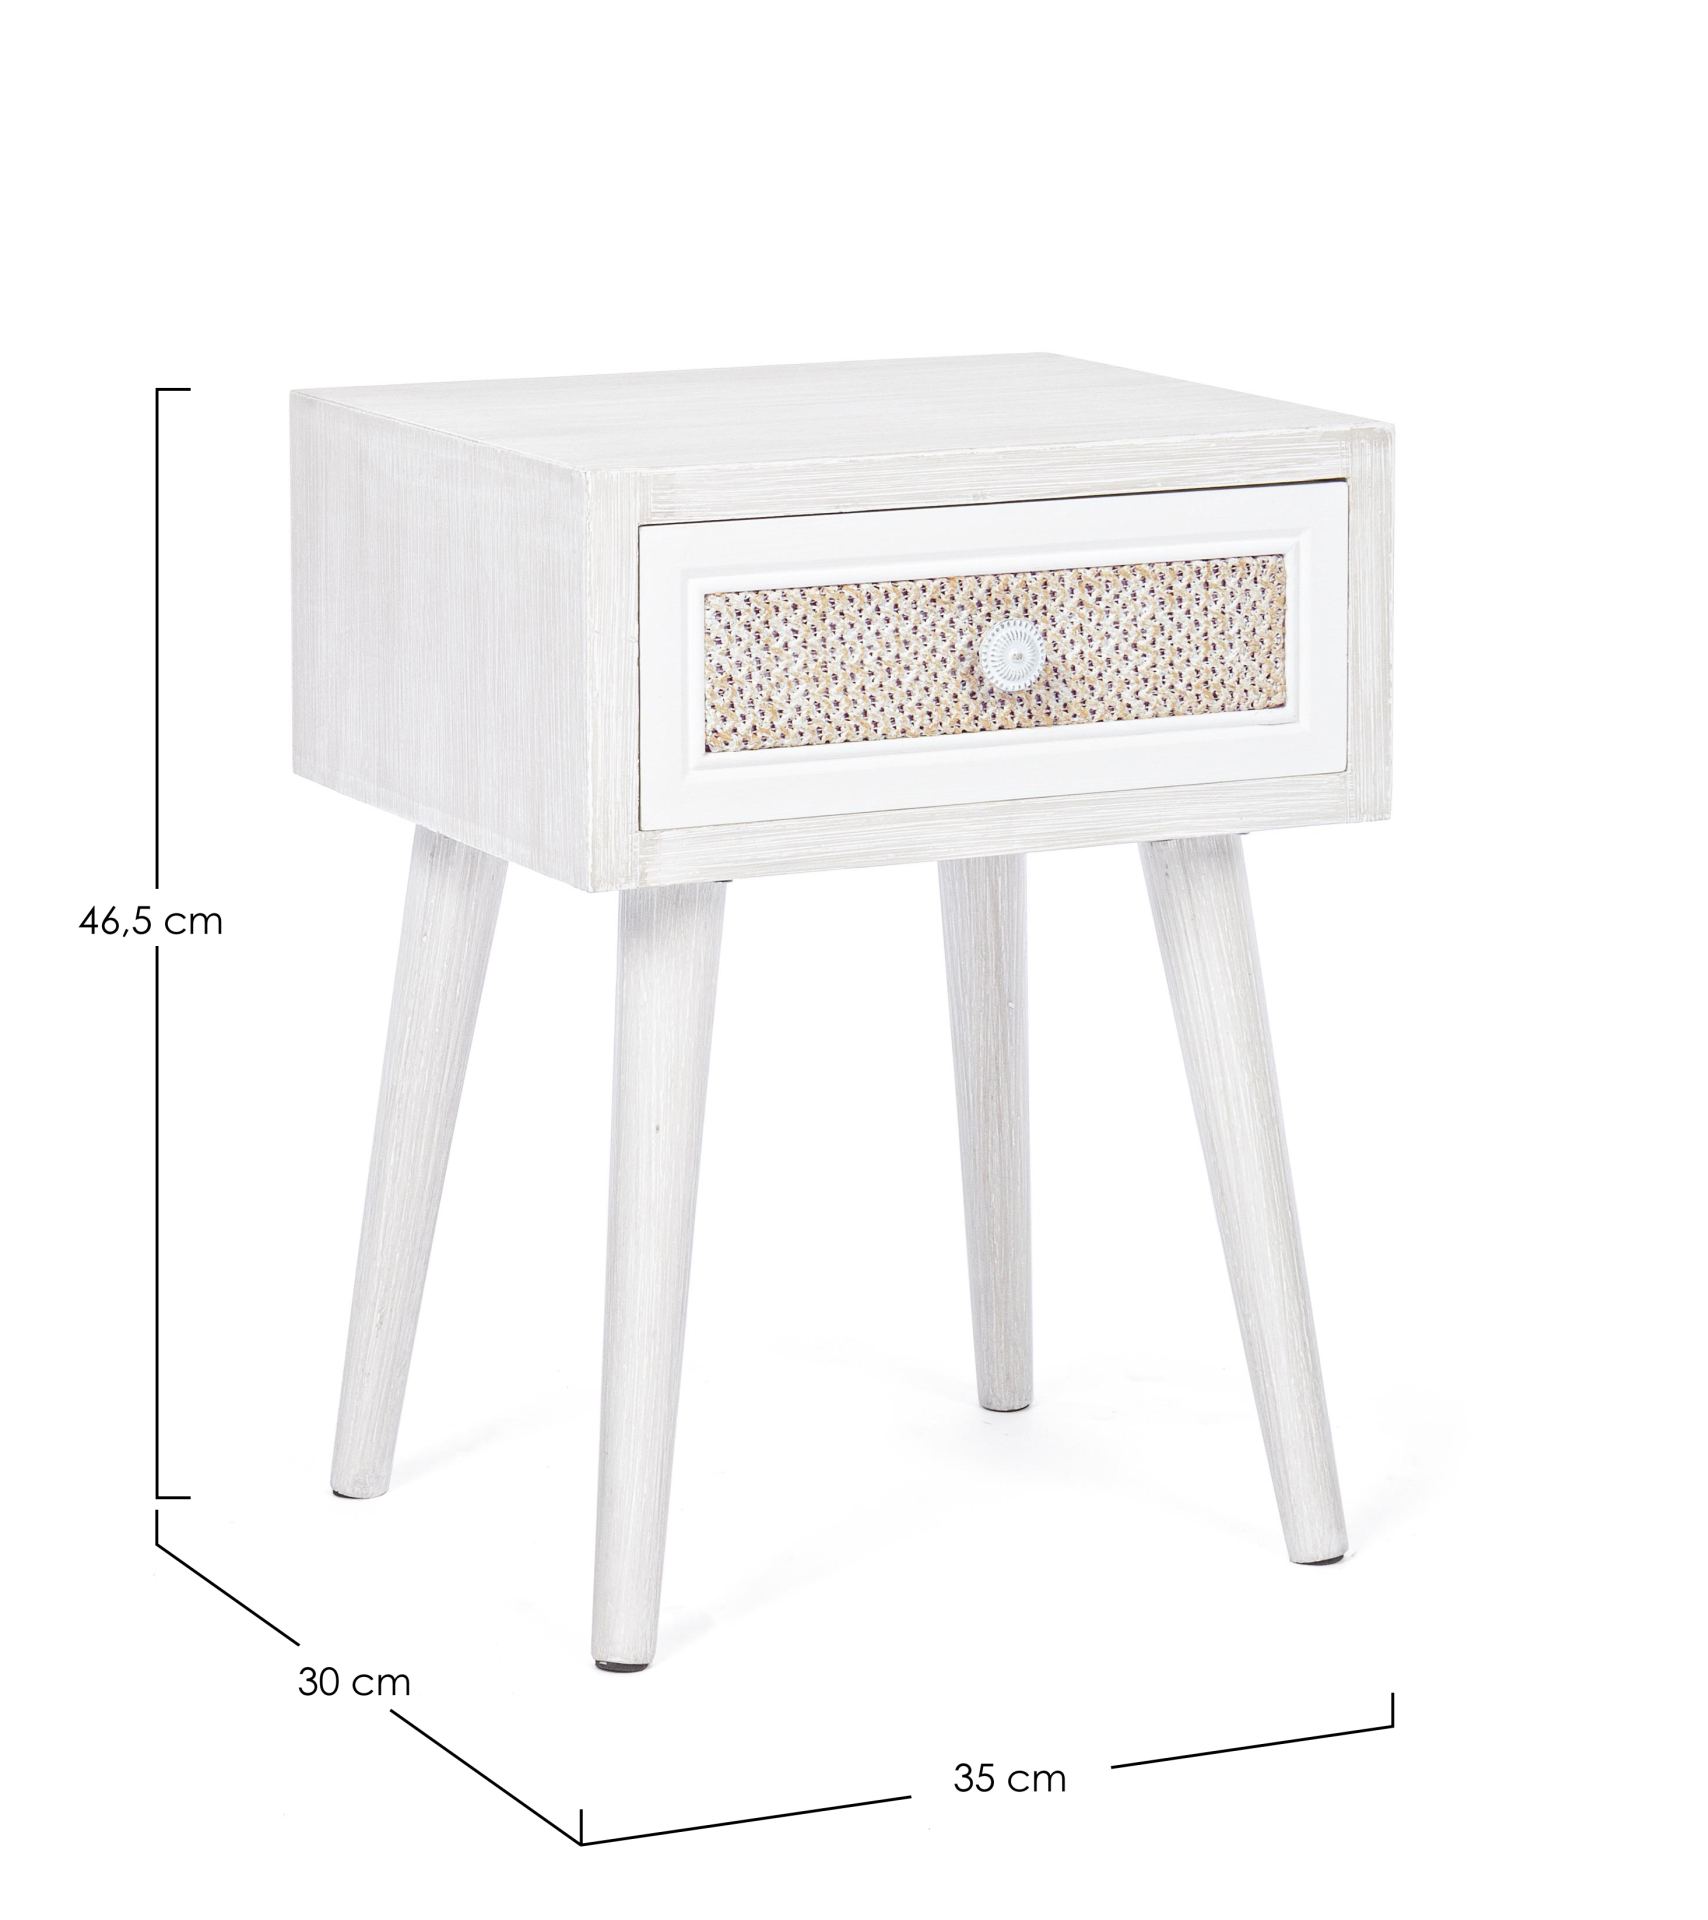 Der Nachttisch Montiel überzeugt mit seinem klassischen Design. Gefertigt wurde er aus MDF, welches einen weißen Farbton besitzt. Die Schublade ist aus Leinen gefertigt. Der Nachttisch verfügt über eine Schublade. Die Breite beträgt 31 cm.